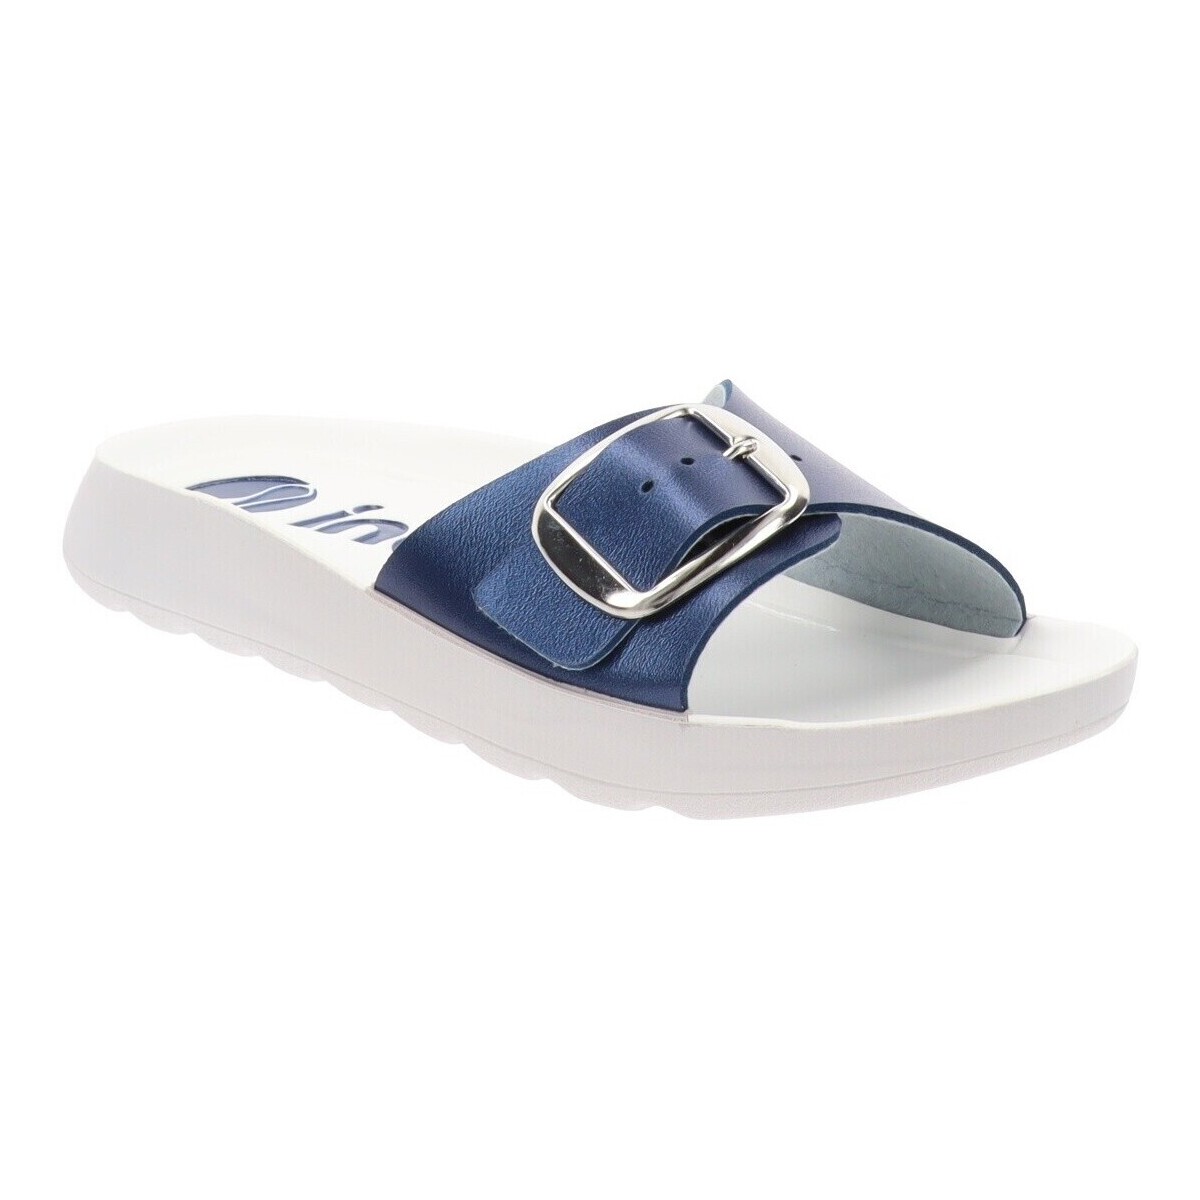 kengät Naiset Sandaalit Inblu AG000003 Sininen